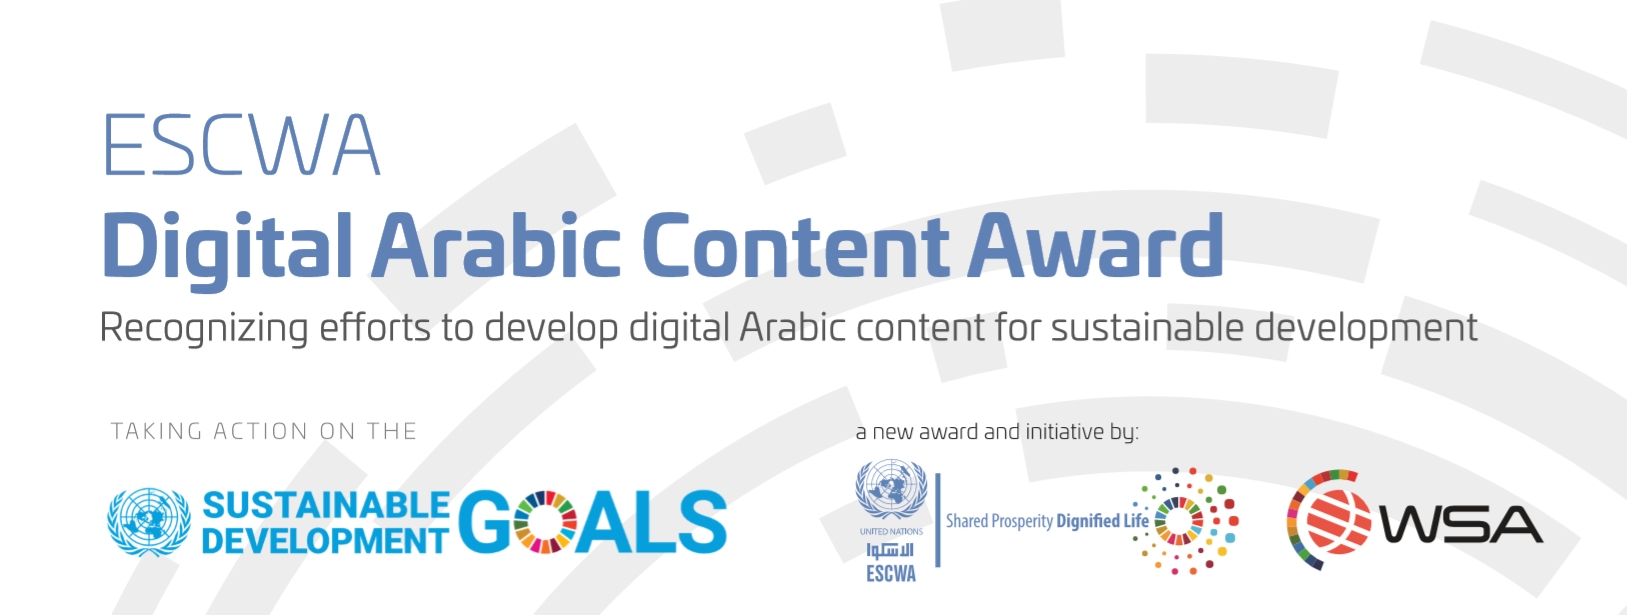 ESCWA Digital Arabic Content Award